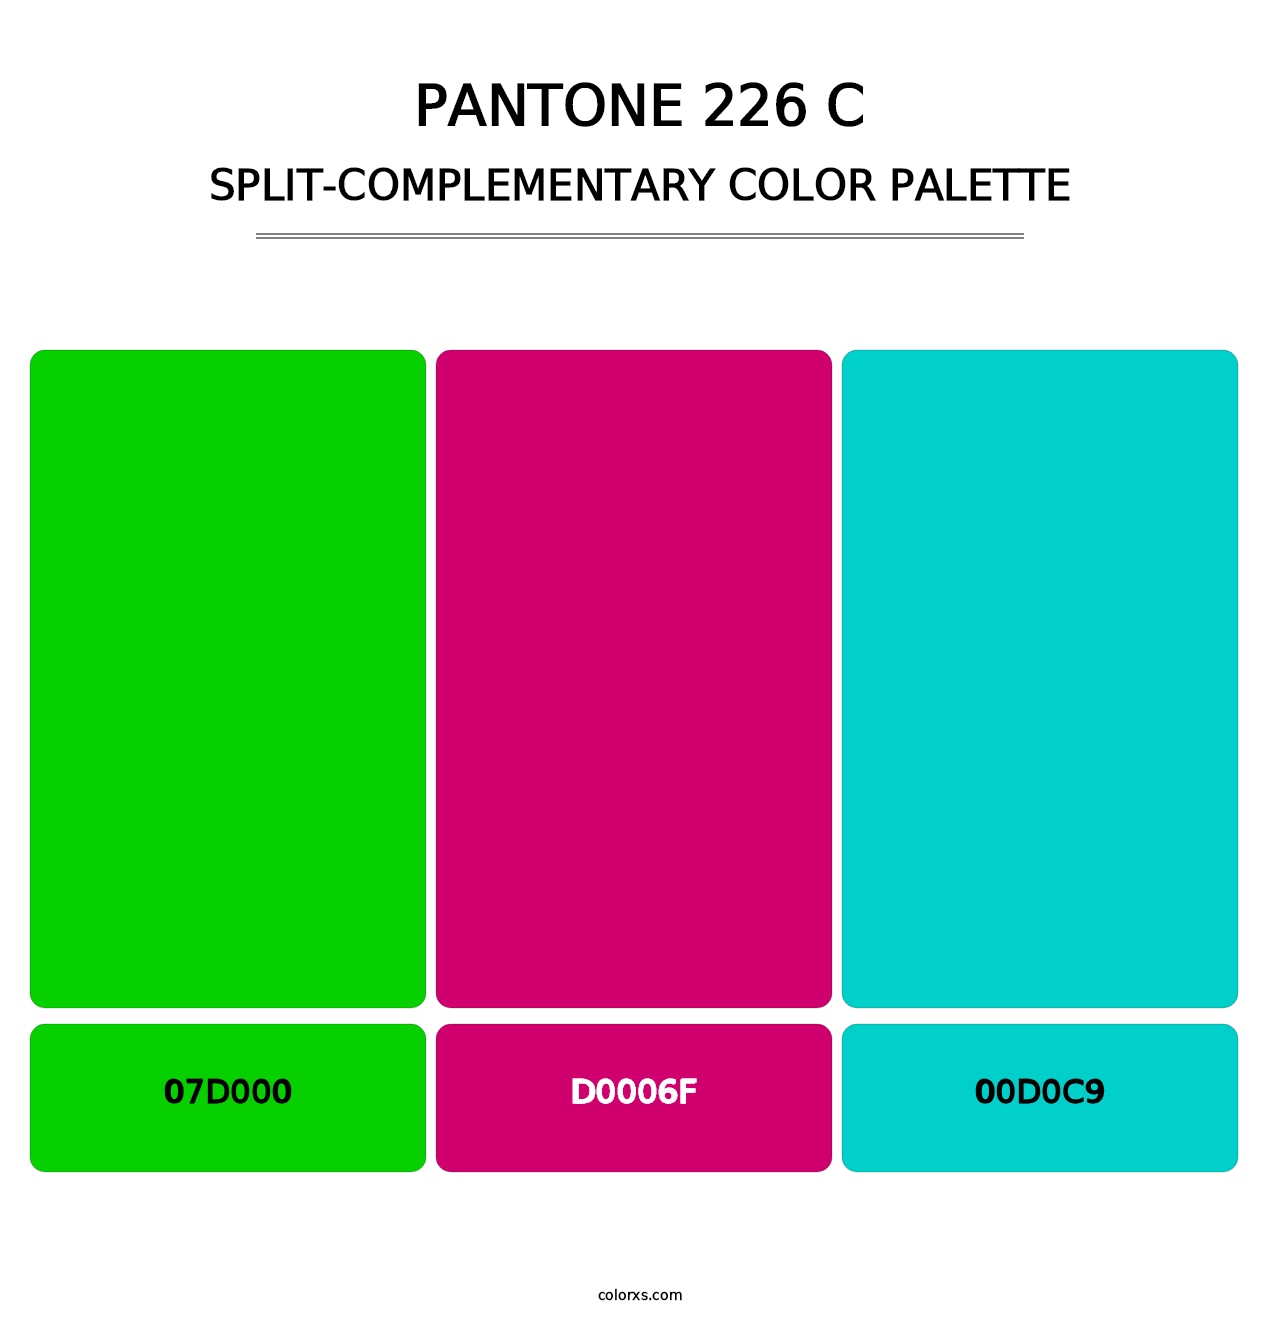 PANTONE 226 C - Split-Complementary Color Palette